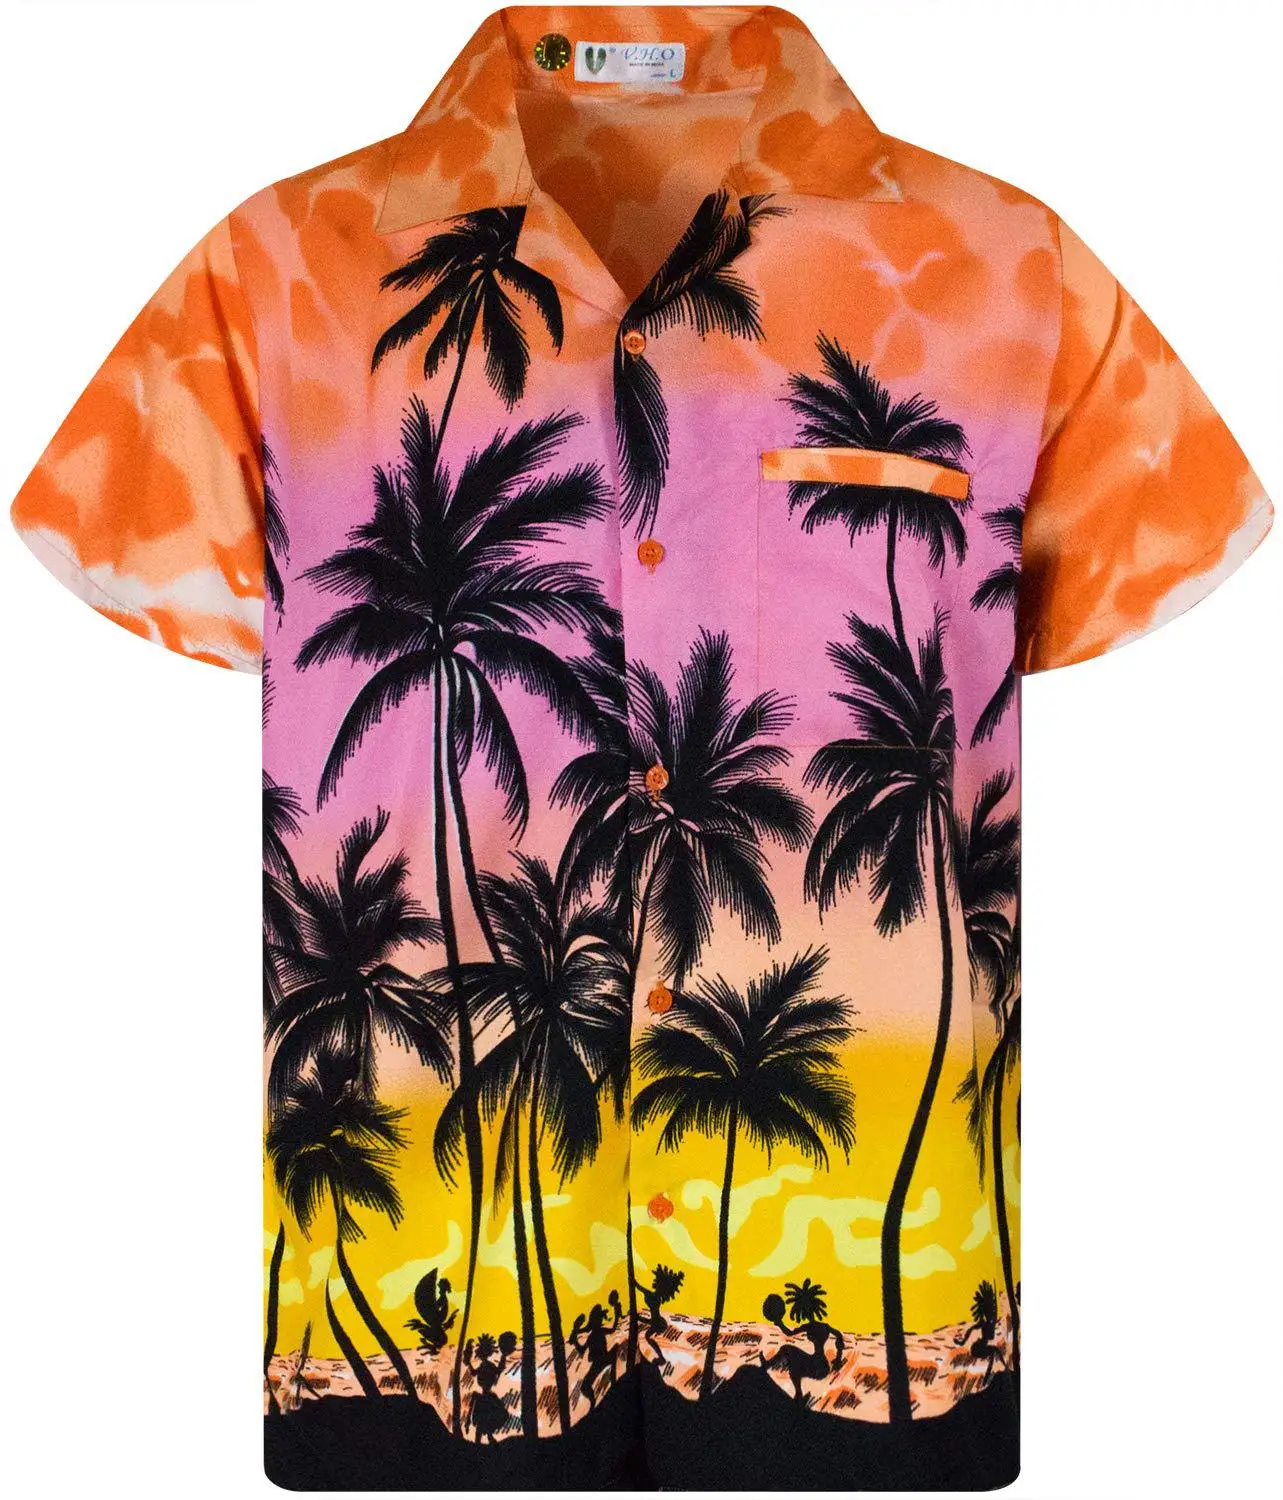 

Рубашка мужская с кокосовым деревом, модная повседневная Пляжная блуза свободного покроя, гавайский принт, с коротким рукавом, лето